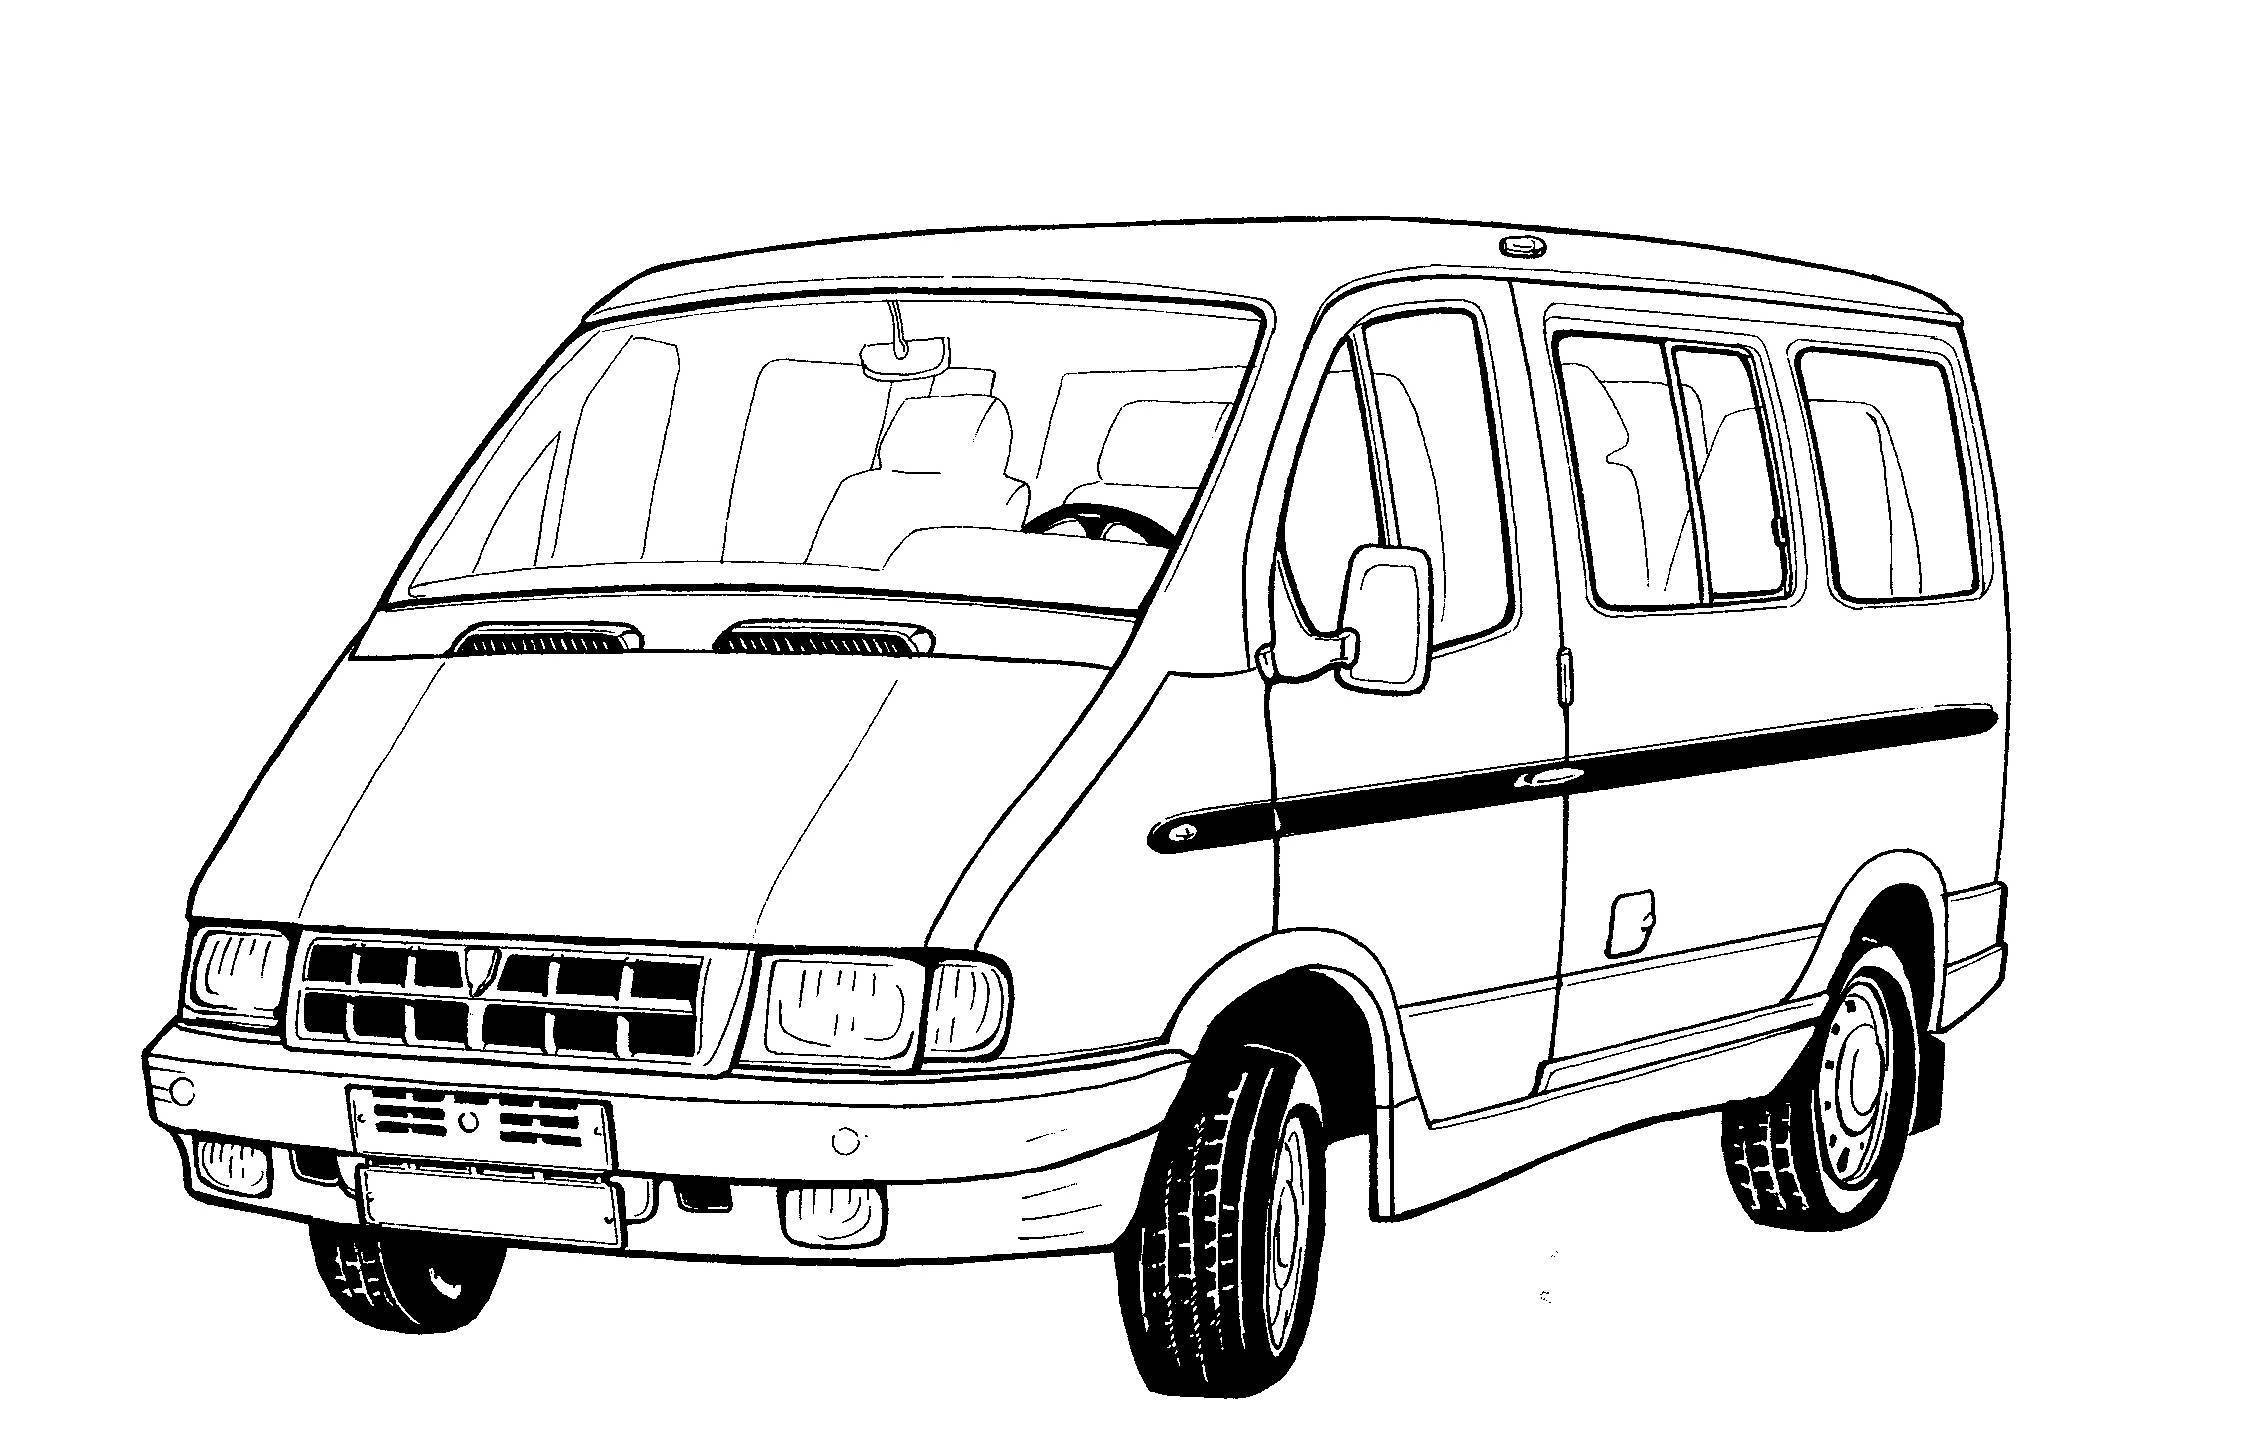 Раскраски с изображением разного вида транспорта для детей    Раскраски на тему рисуем транспорт с детьми . Раскраска с изображением автомобилей ,поездов,самолетов. Раскраски для детей на которых изображён транспорт .      